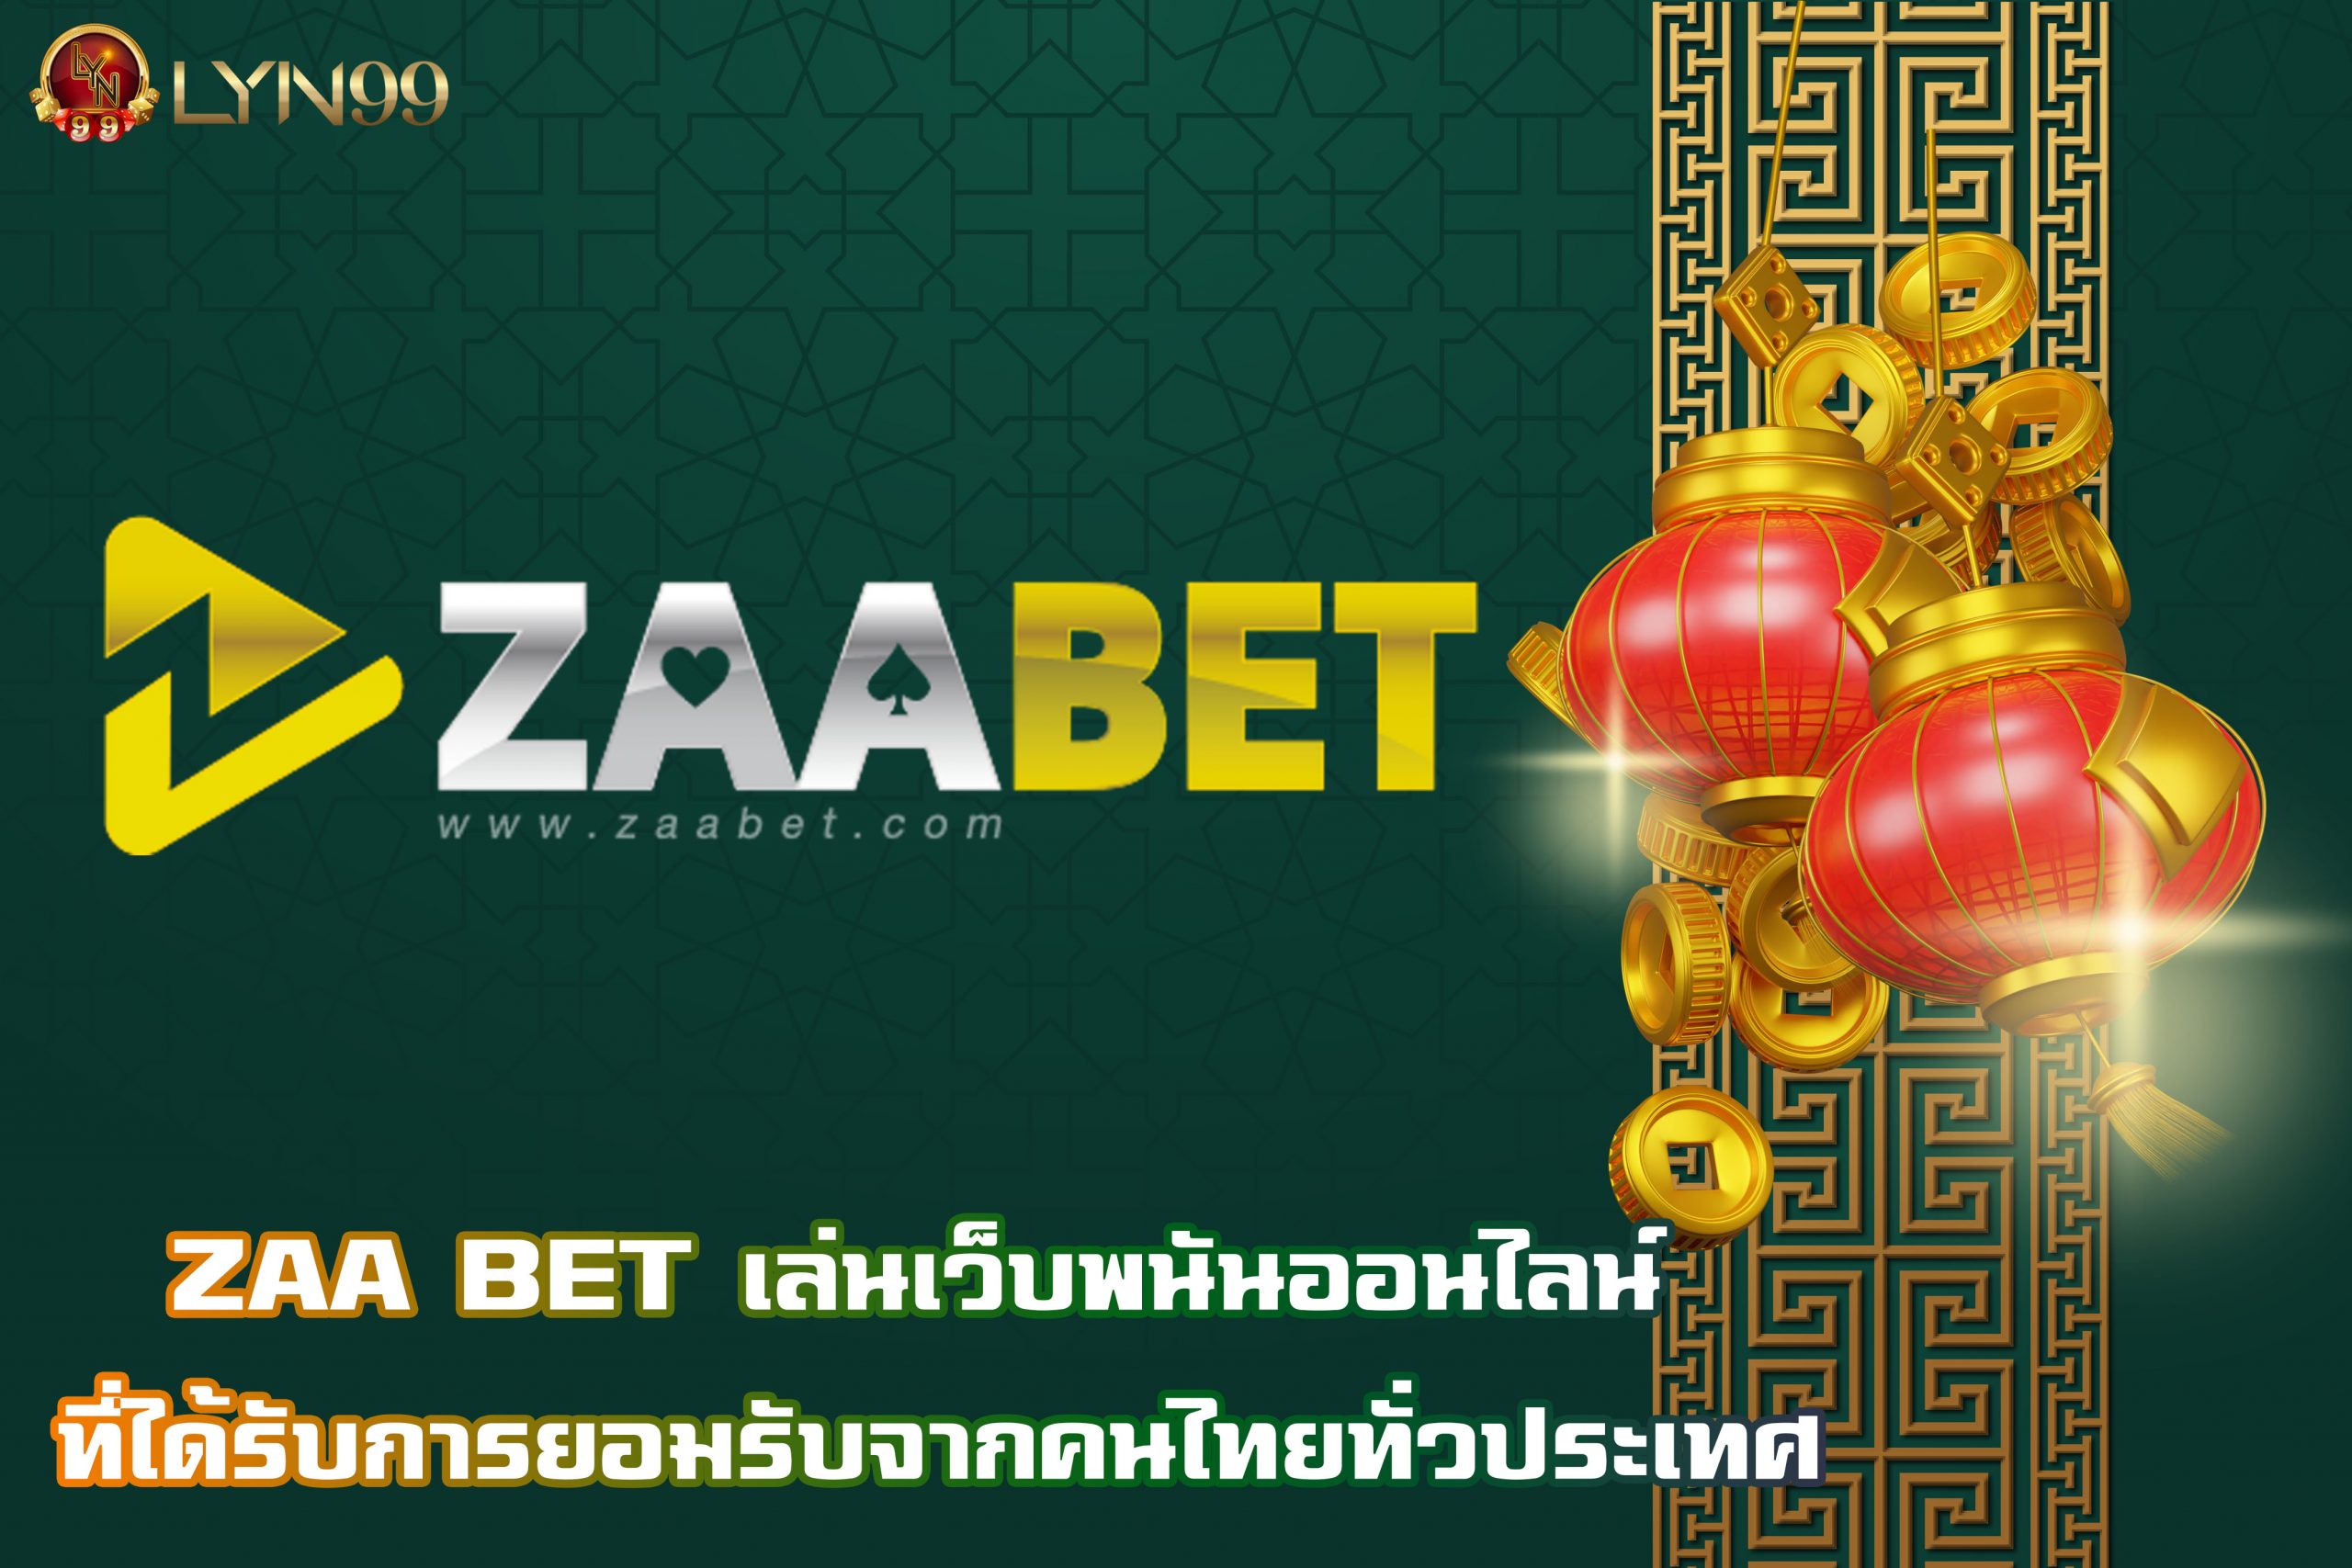 ZAA BET เล่นเว็บพนันออนไลน์ ที่ได้รับการยอมรับจากคนไทยทั่วประเทศ